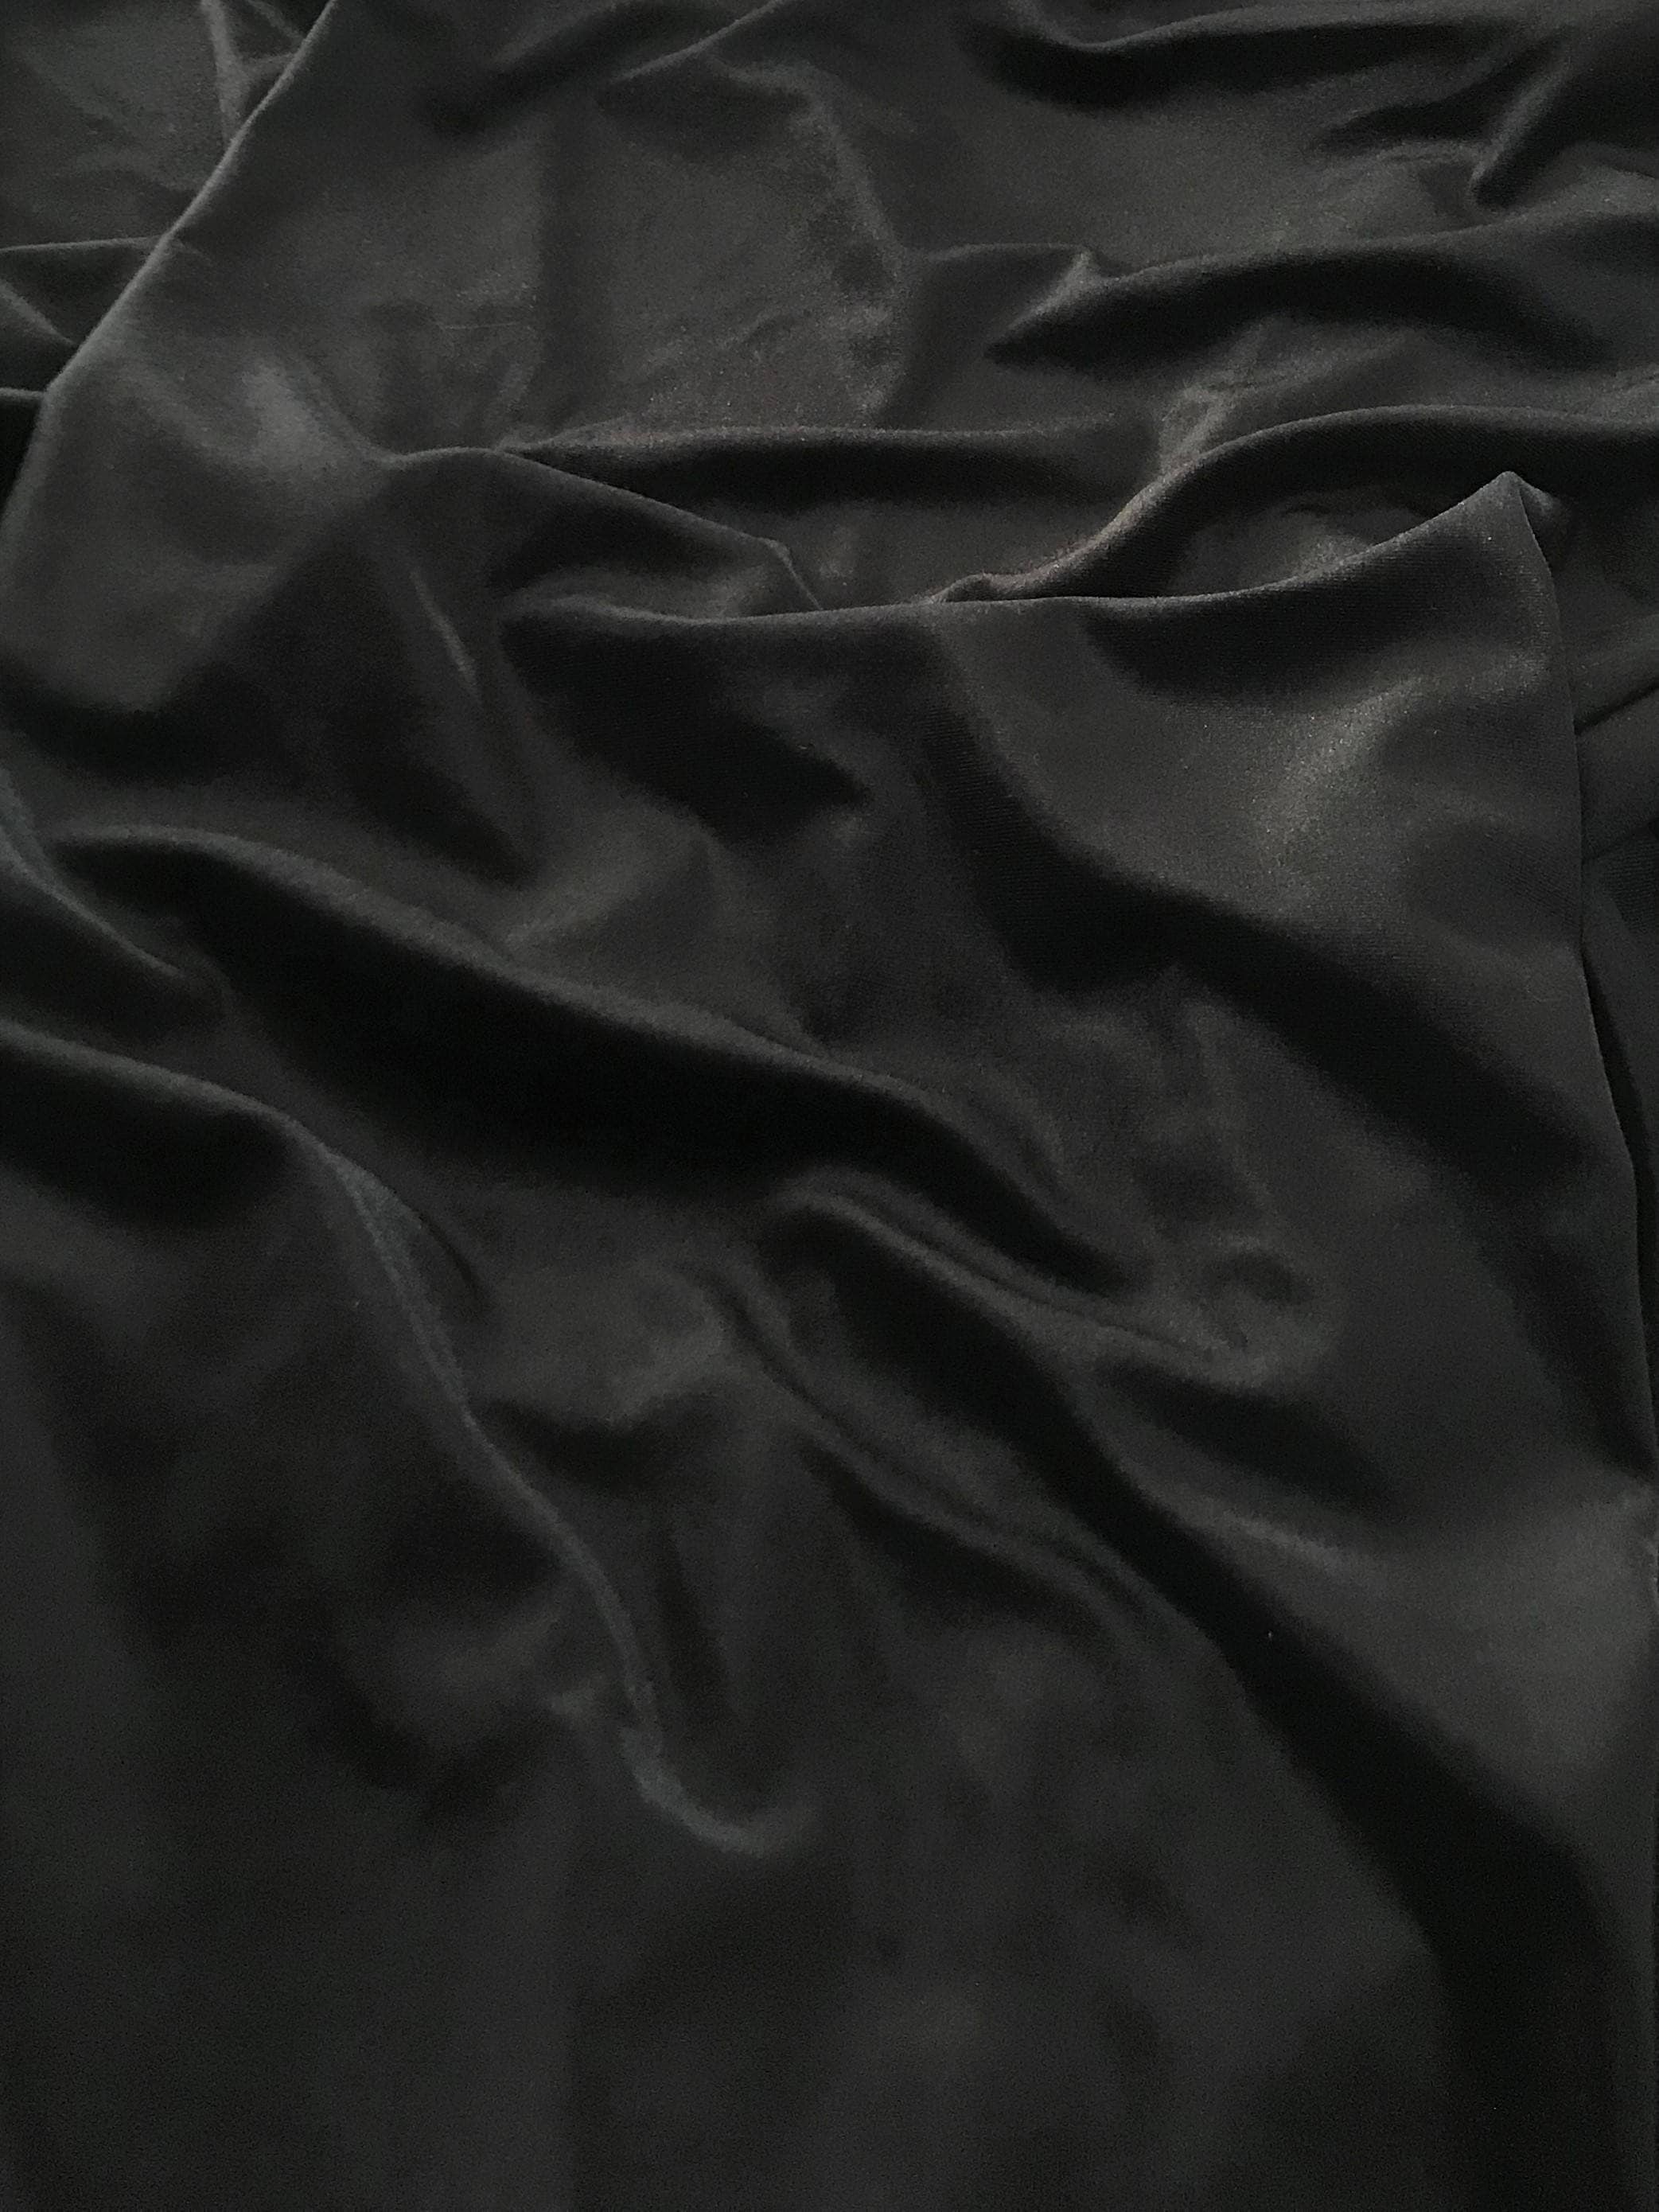 Black Velvet Fabric By the Yard Width 57 Black Velvet | Etsy